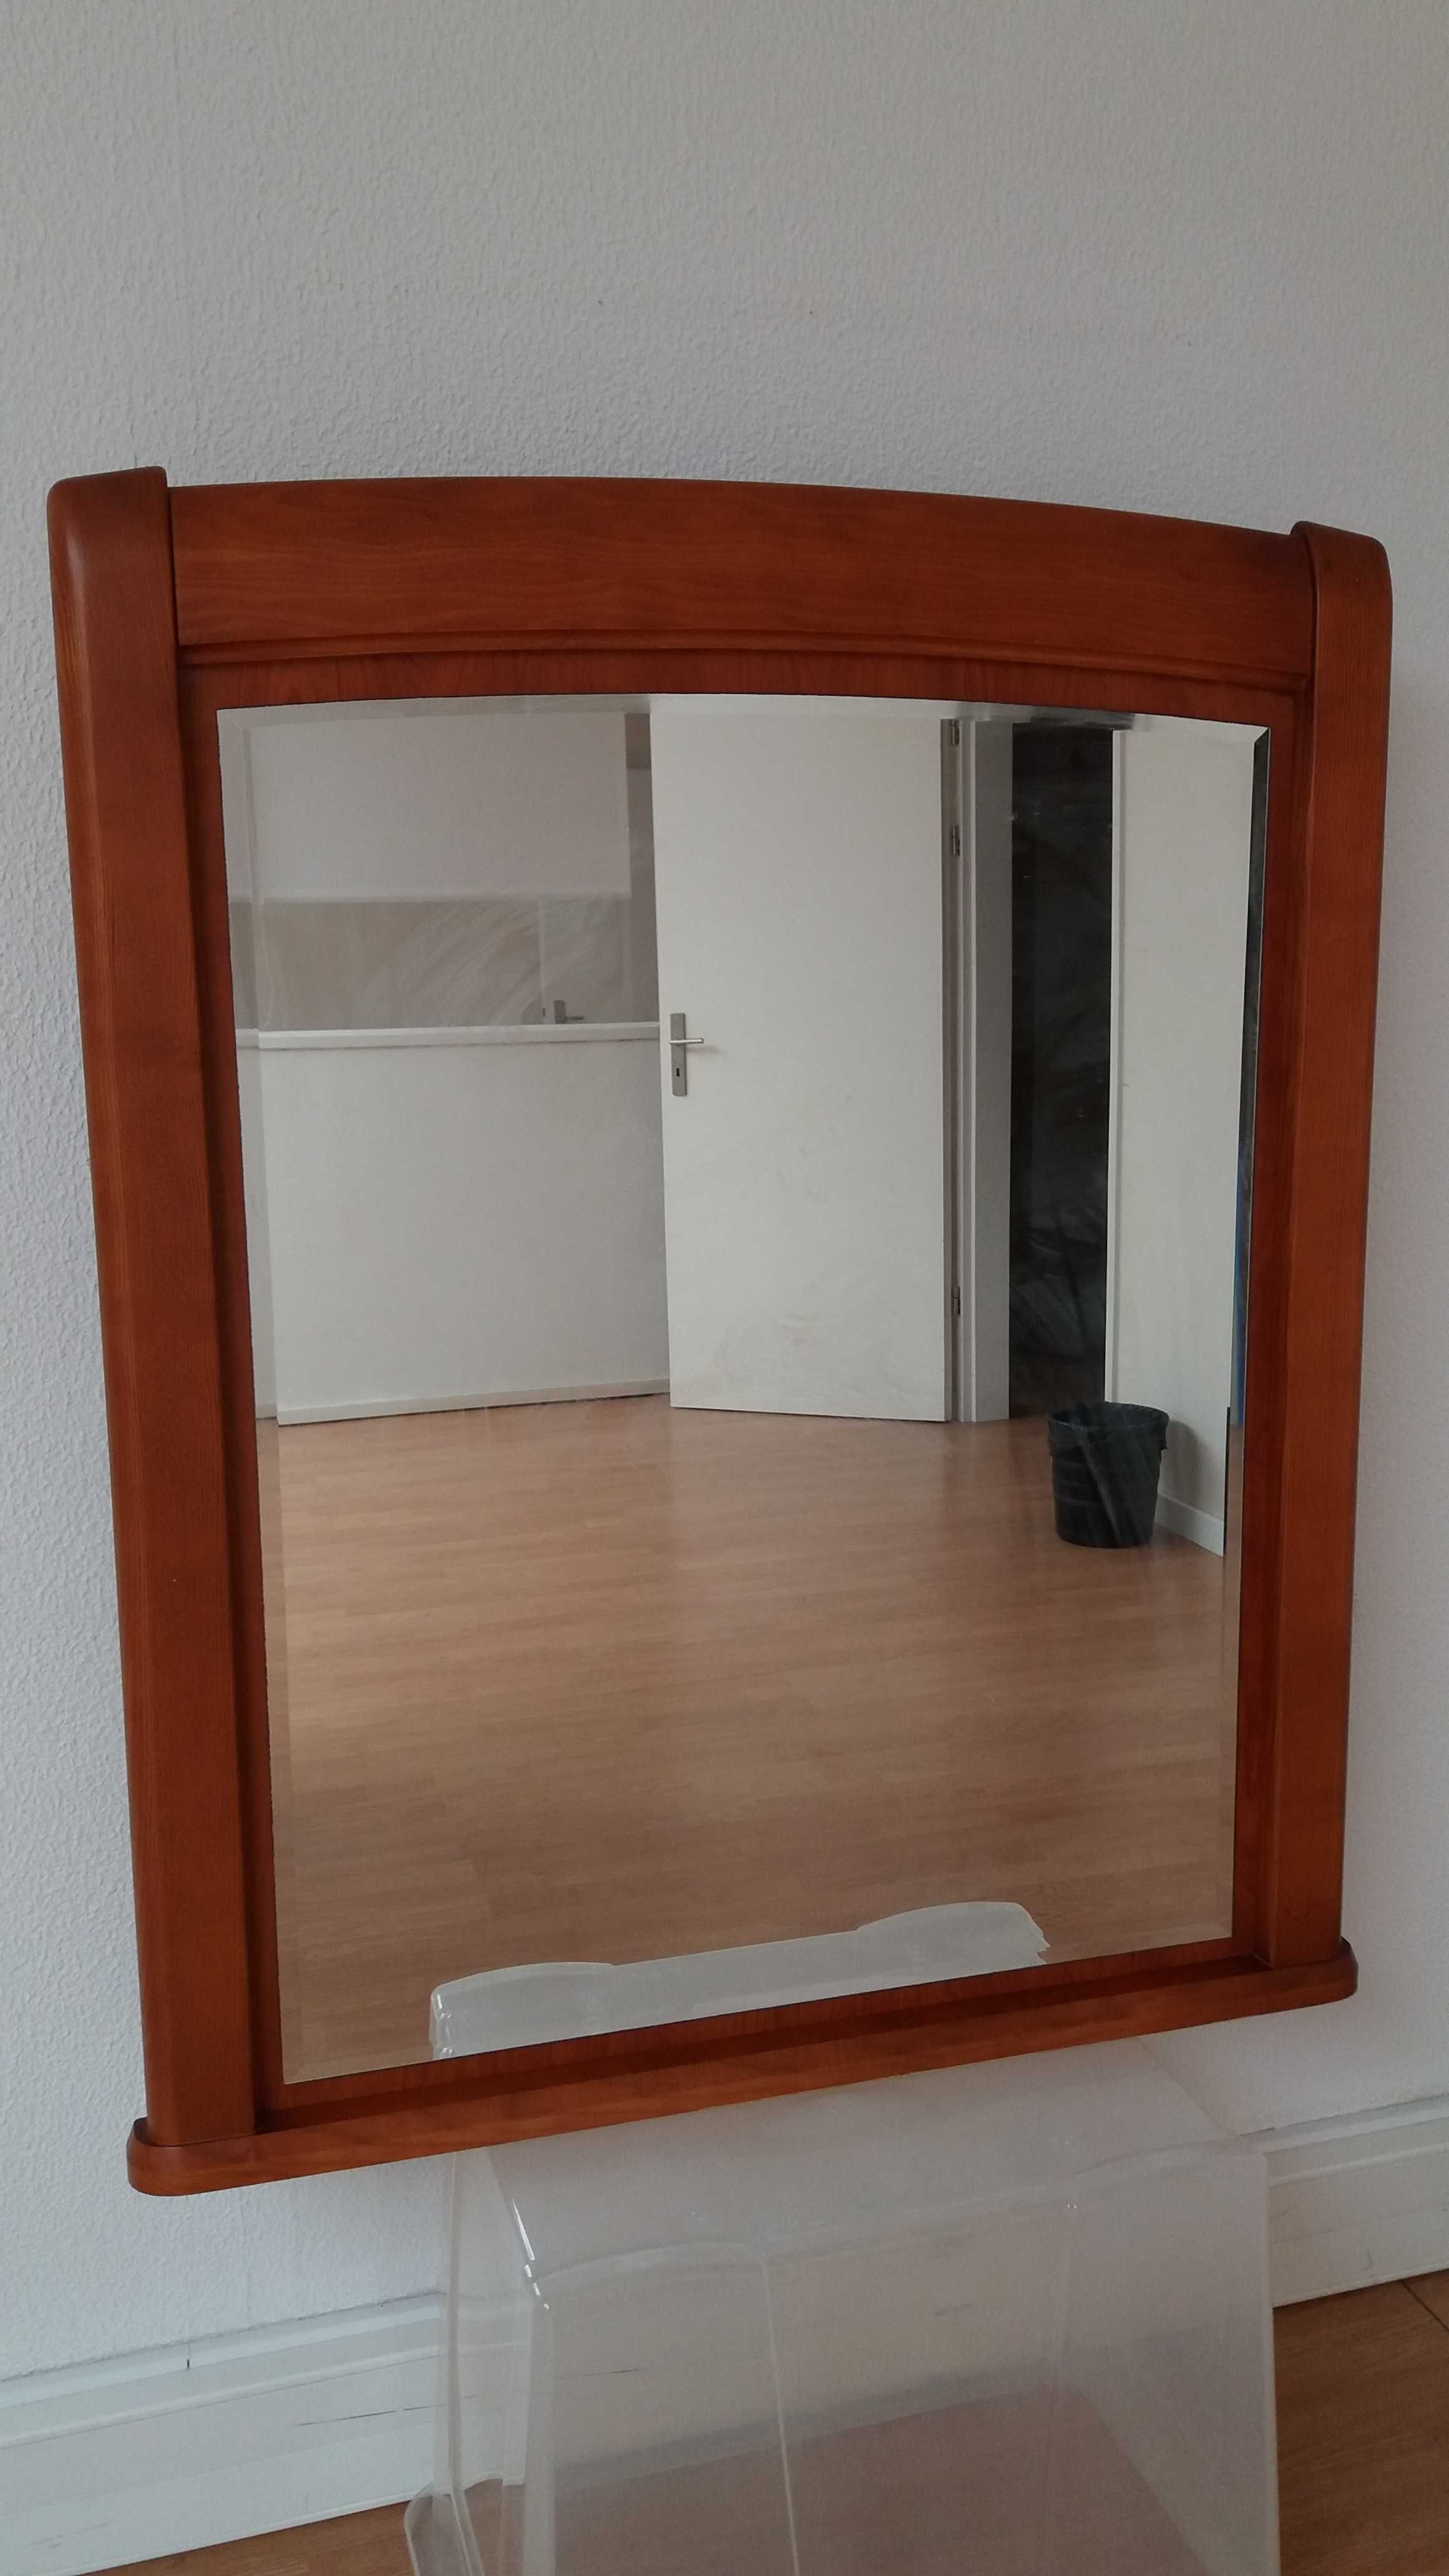 Excelente Espelho para Hall ou Quarto